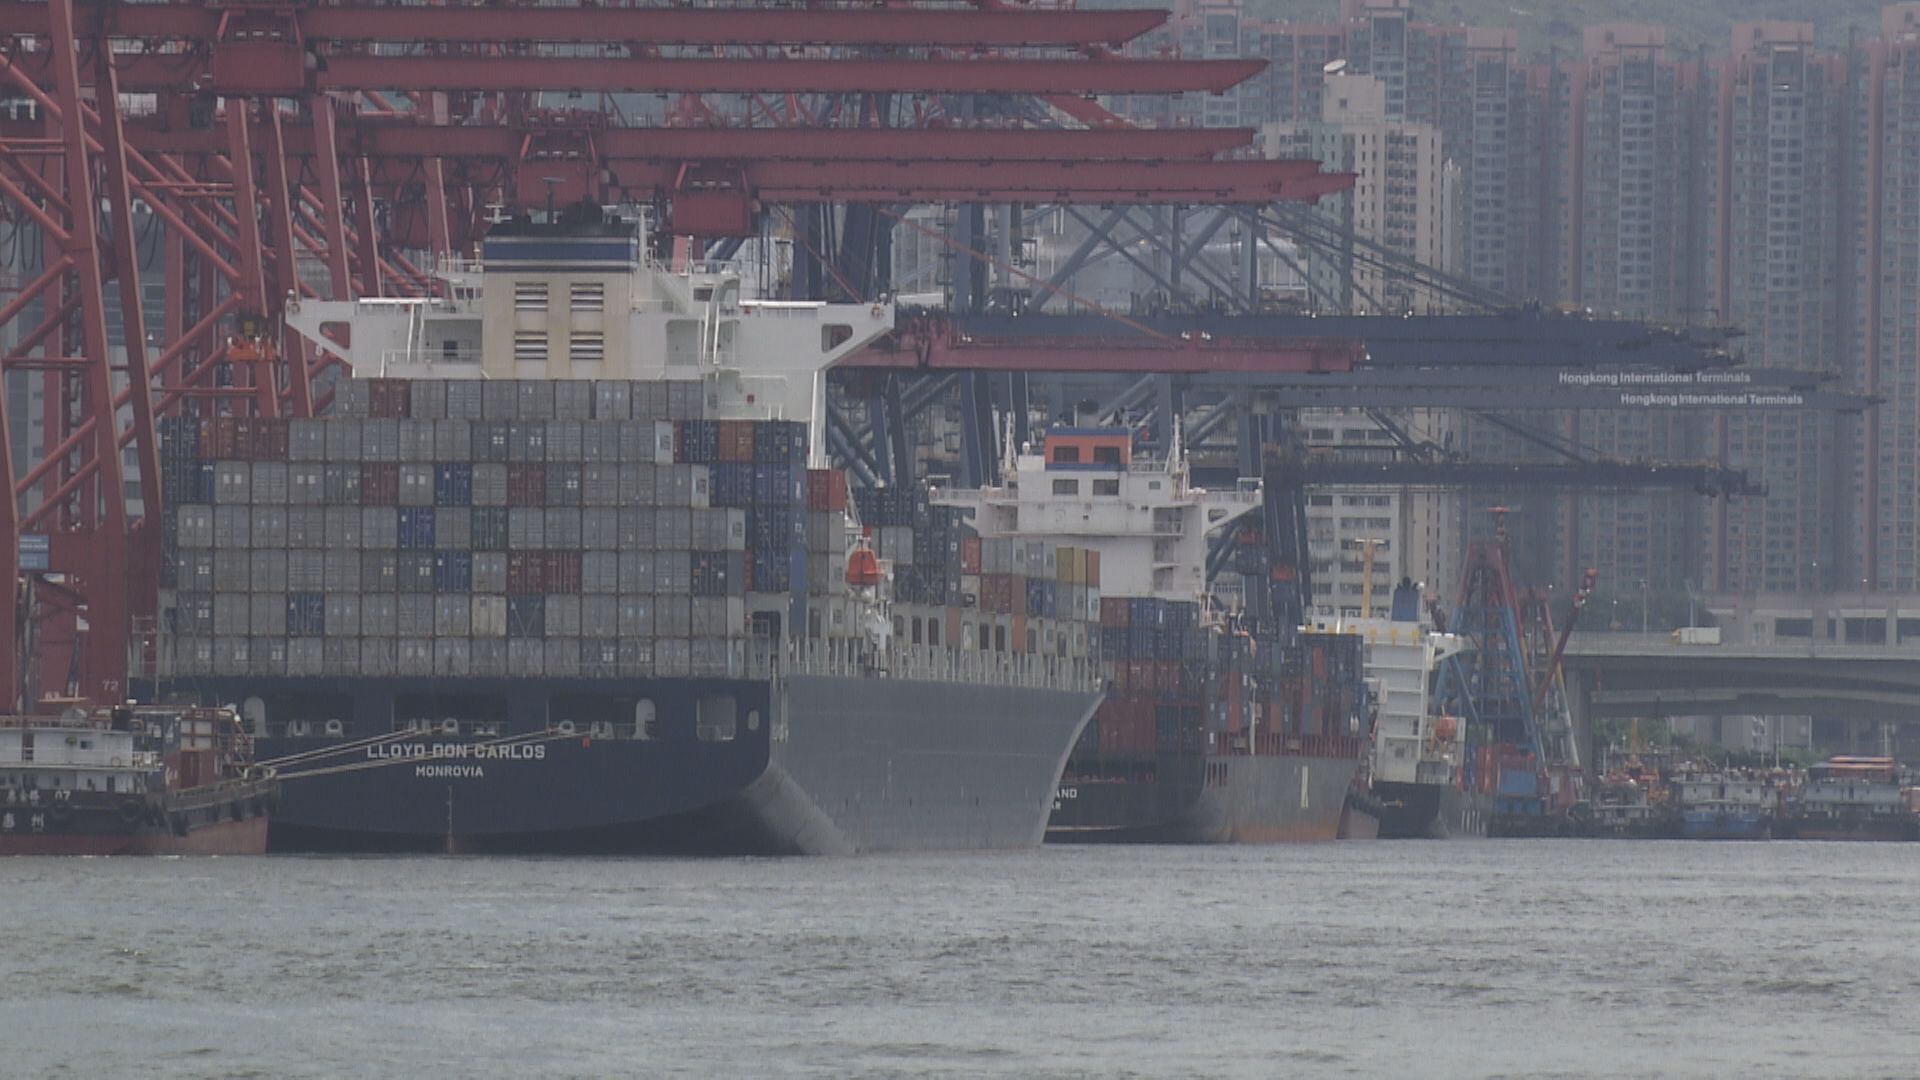 【基數效應】東亞:港外貿年底前可望扭轉跌勢